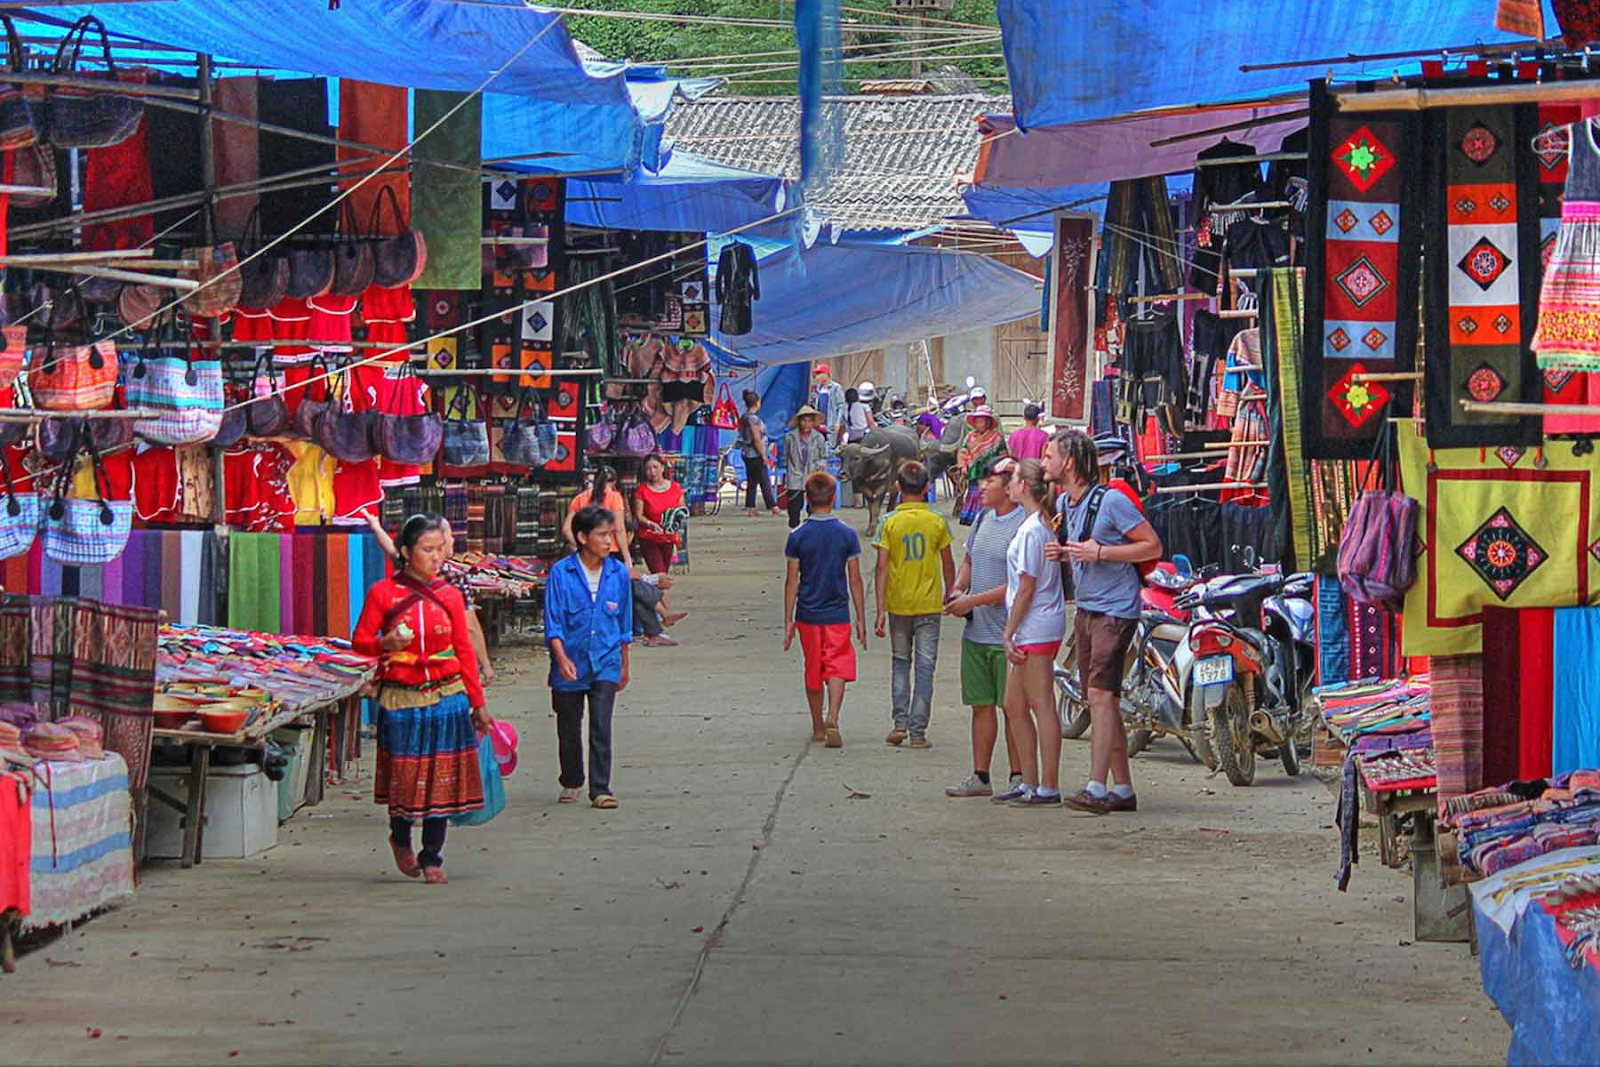 Phiet village market in North Vietnam